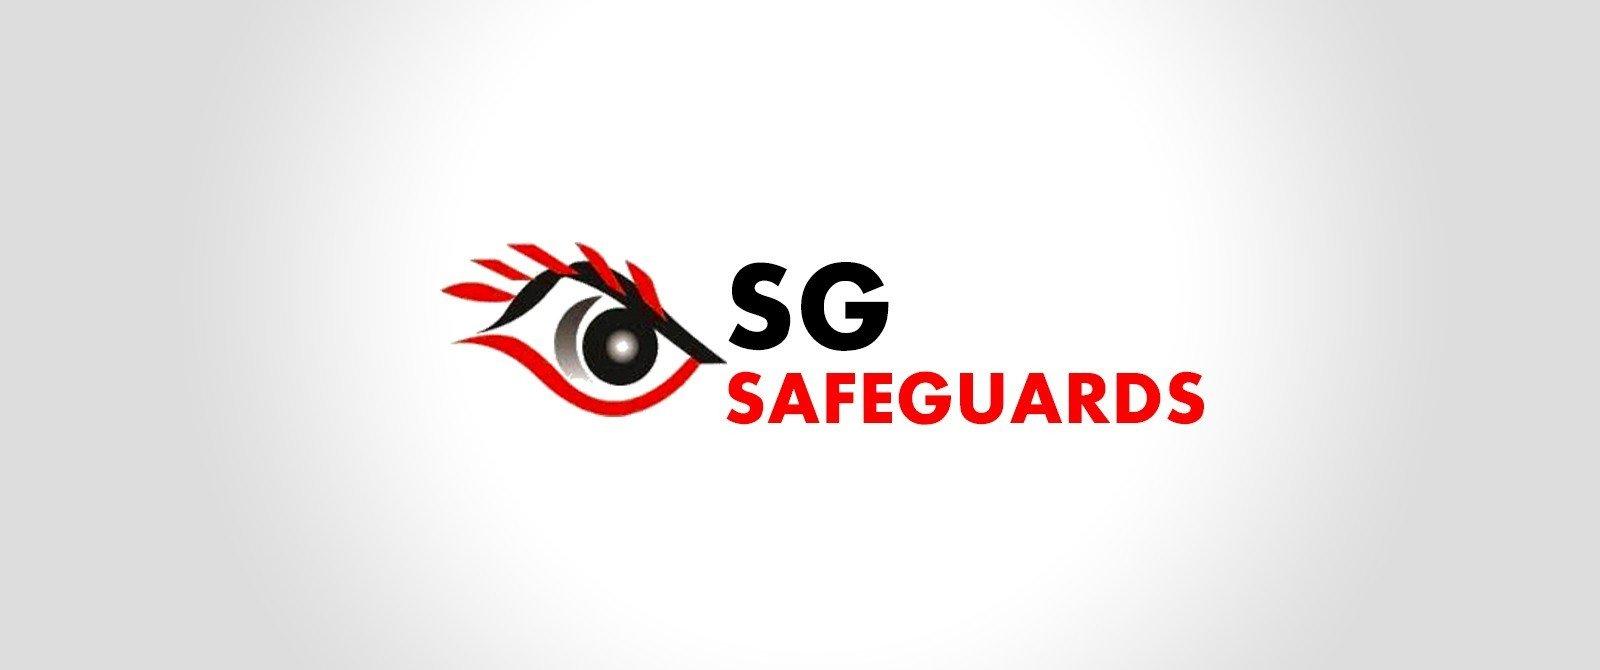 Công Ty TNHH SG Safeguards - Chi Nhánh Tại TP. Hồ Chí Minh tuyển dụng - Tìm việc mới nhất, lương thưởng hấp dẫn.